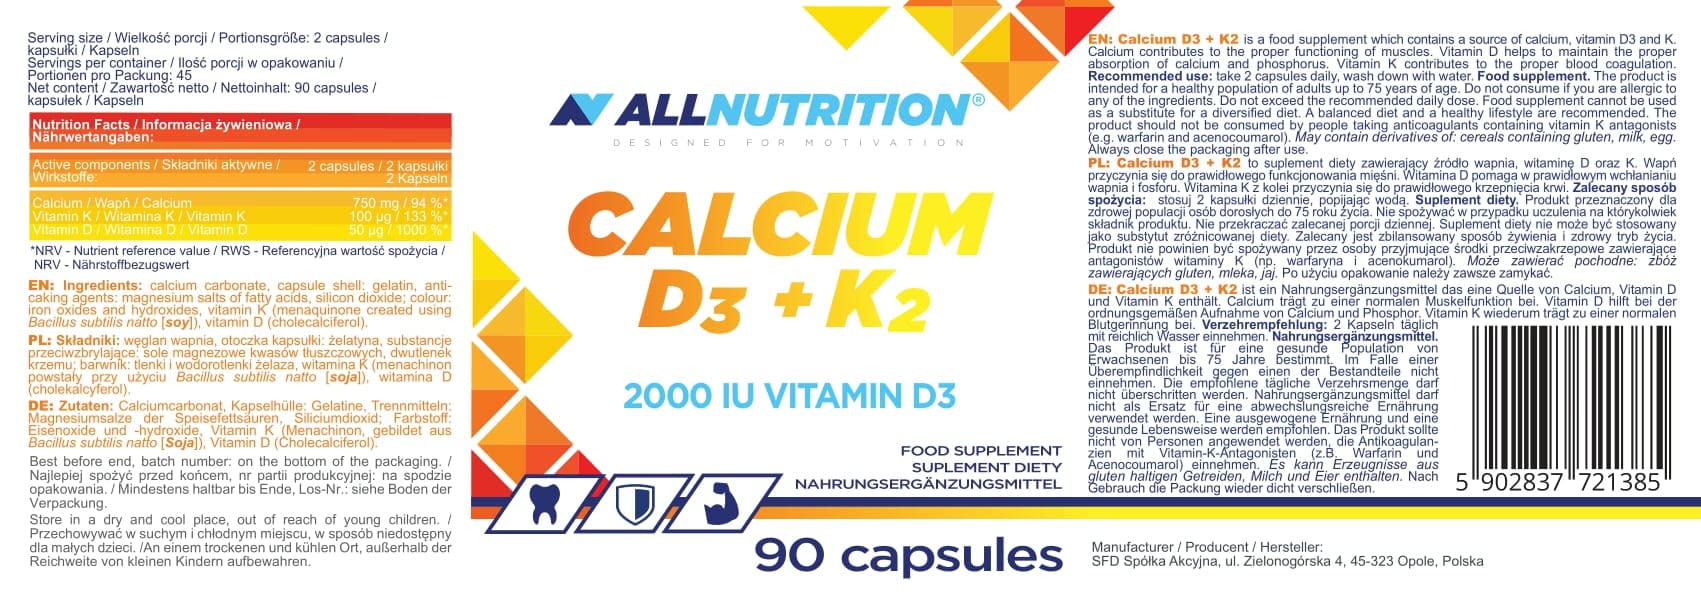 Allnutrition Calcium D3 + K2 - 90 caps | High-Quality Vitamins, Minerals & Supplements | MySupplementShop.co.uk